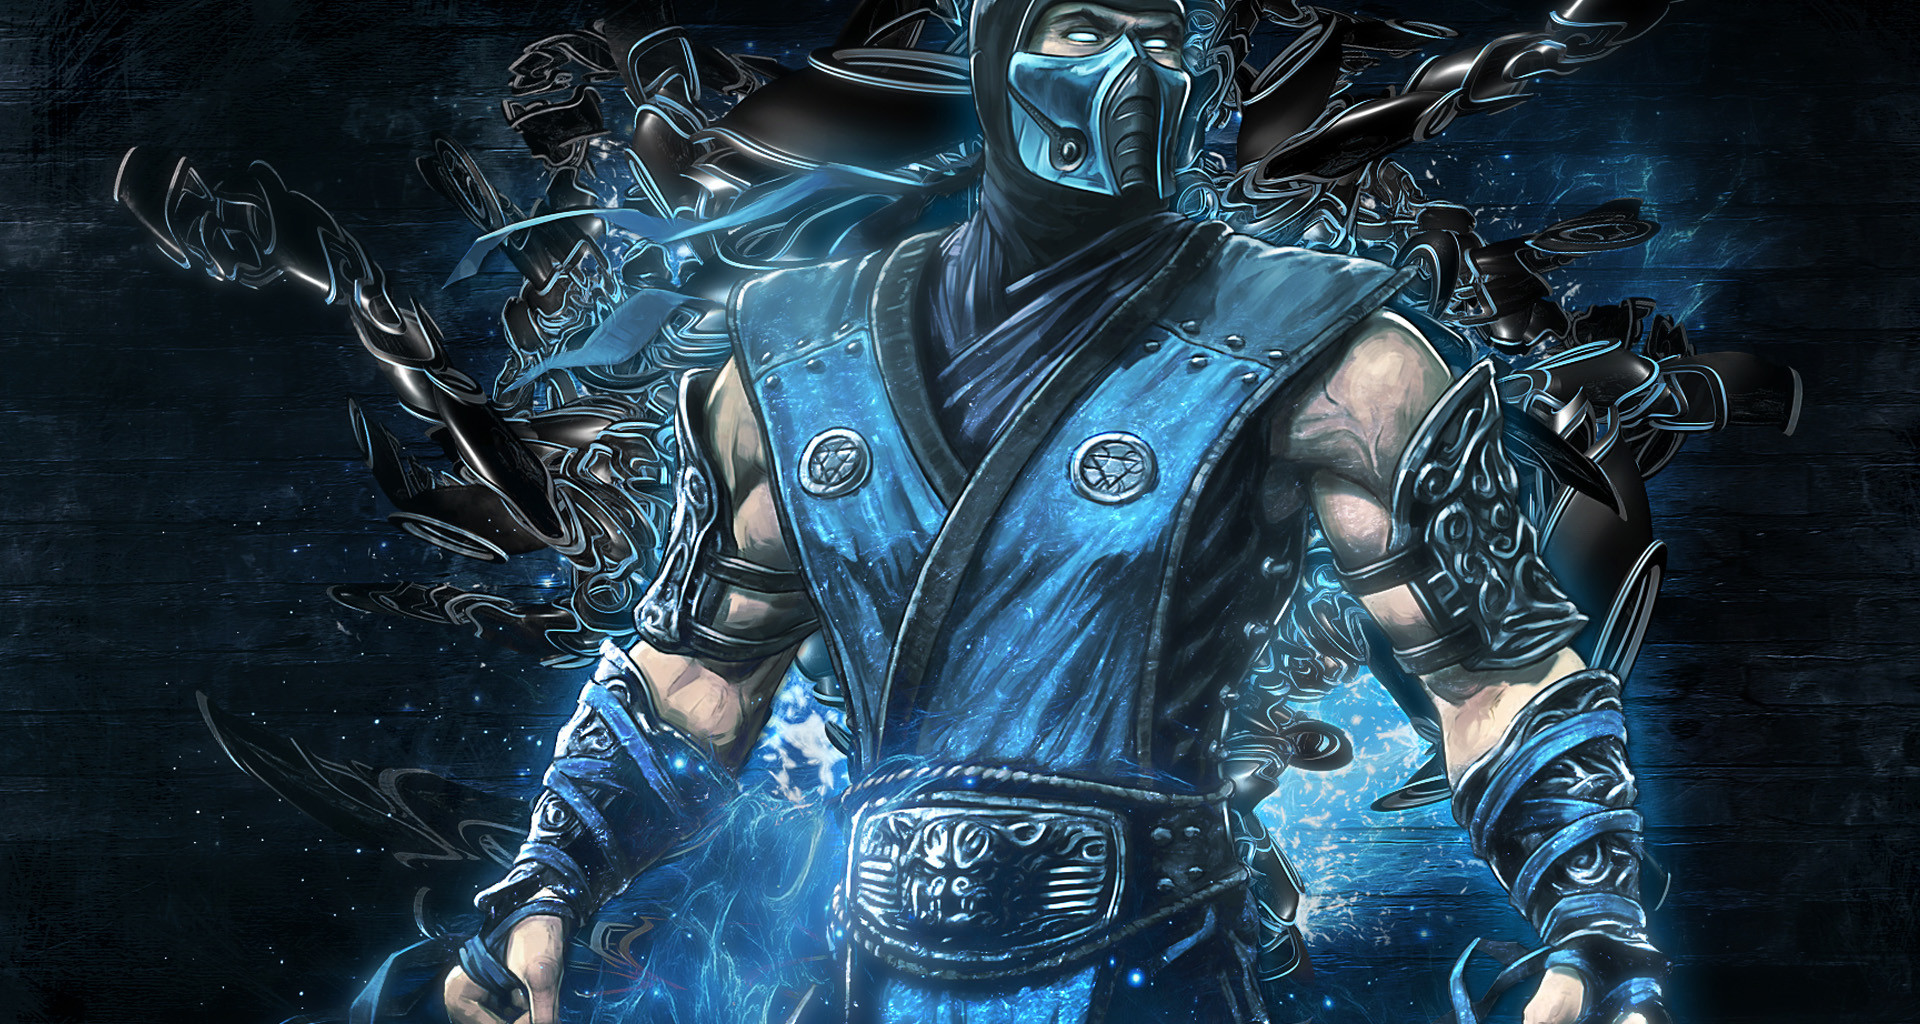 Mortal Kombat Wallpaper Fondos De Pantalla Imagenes HD